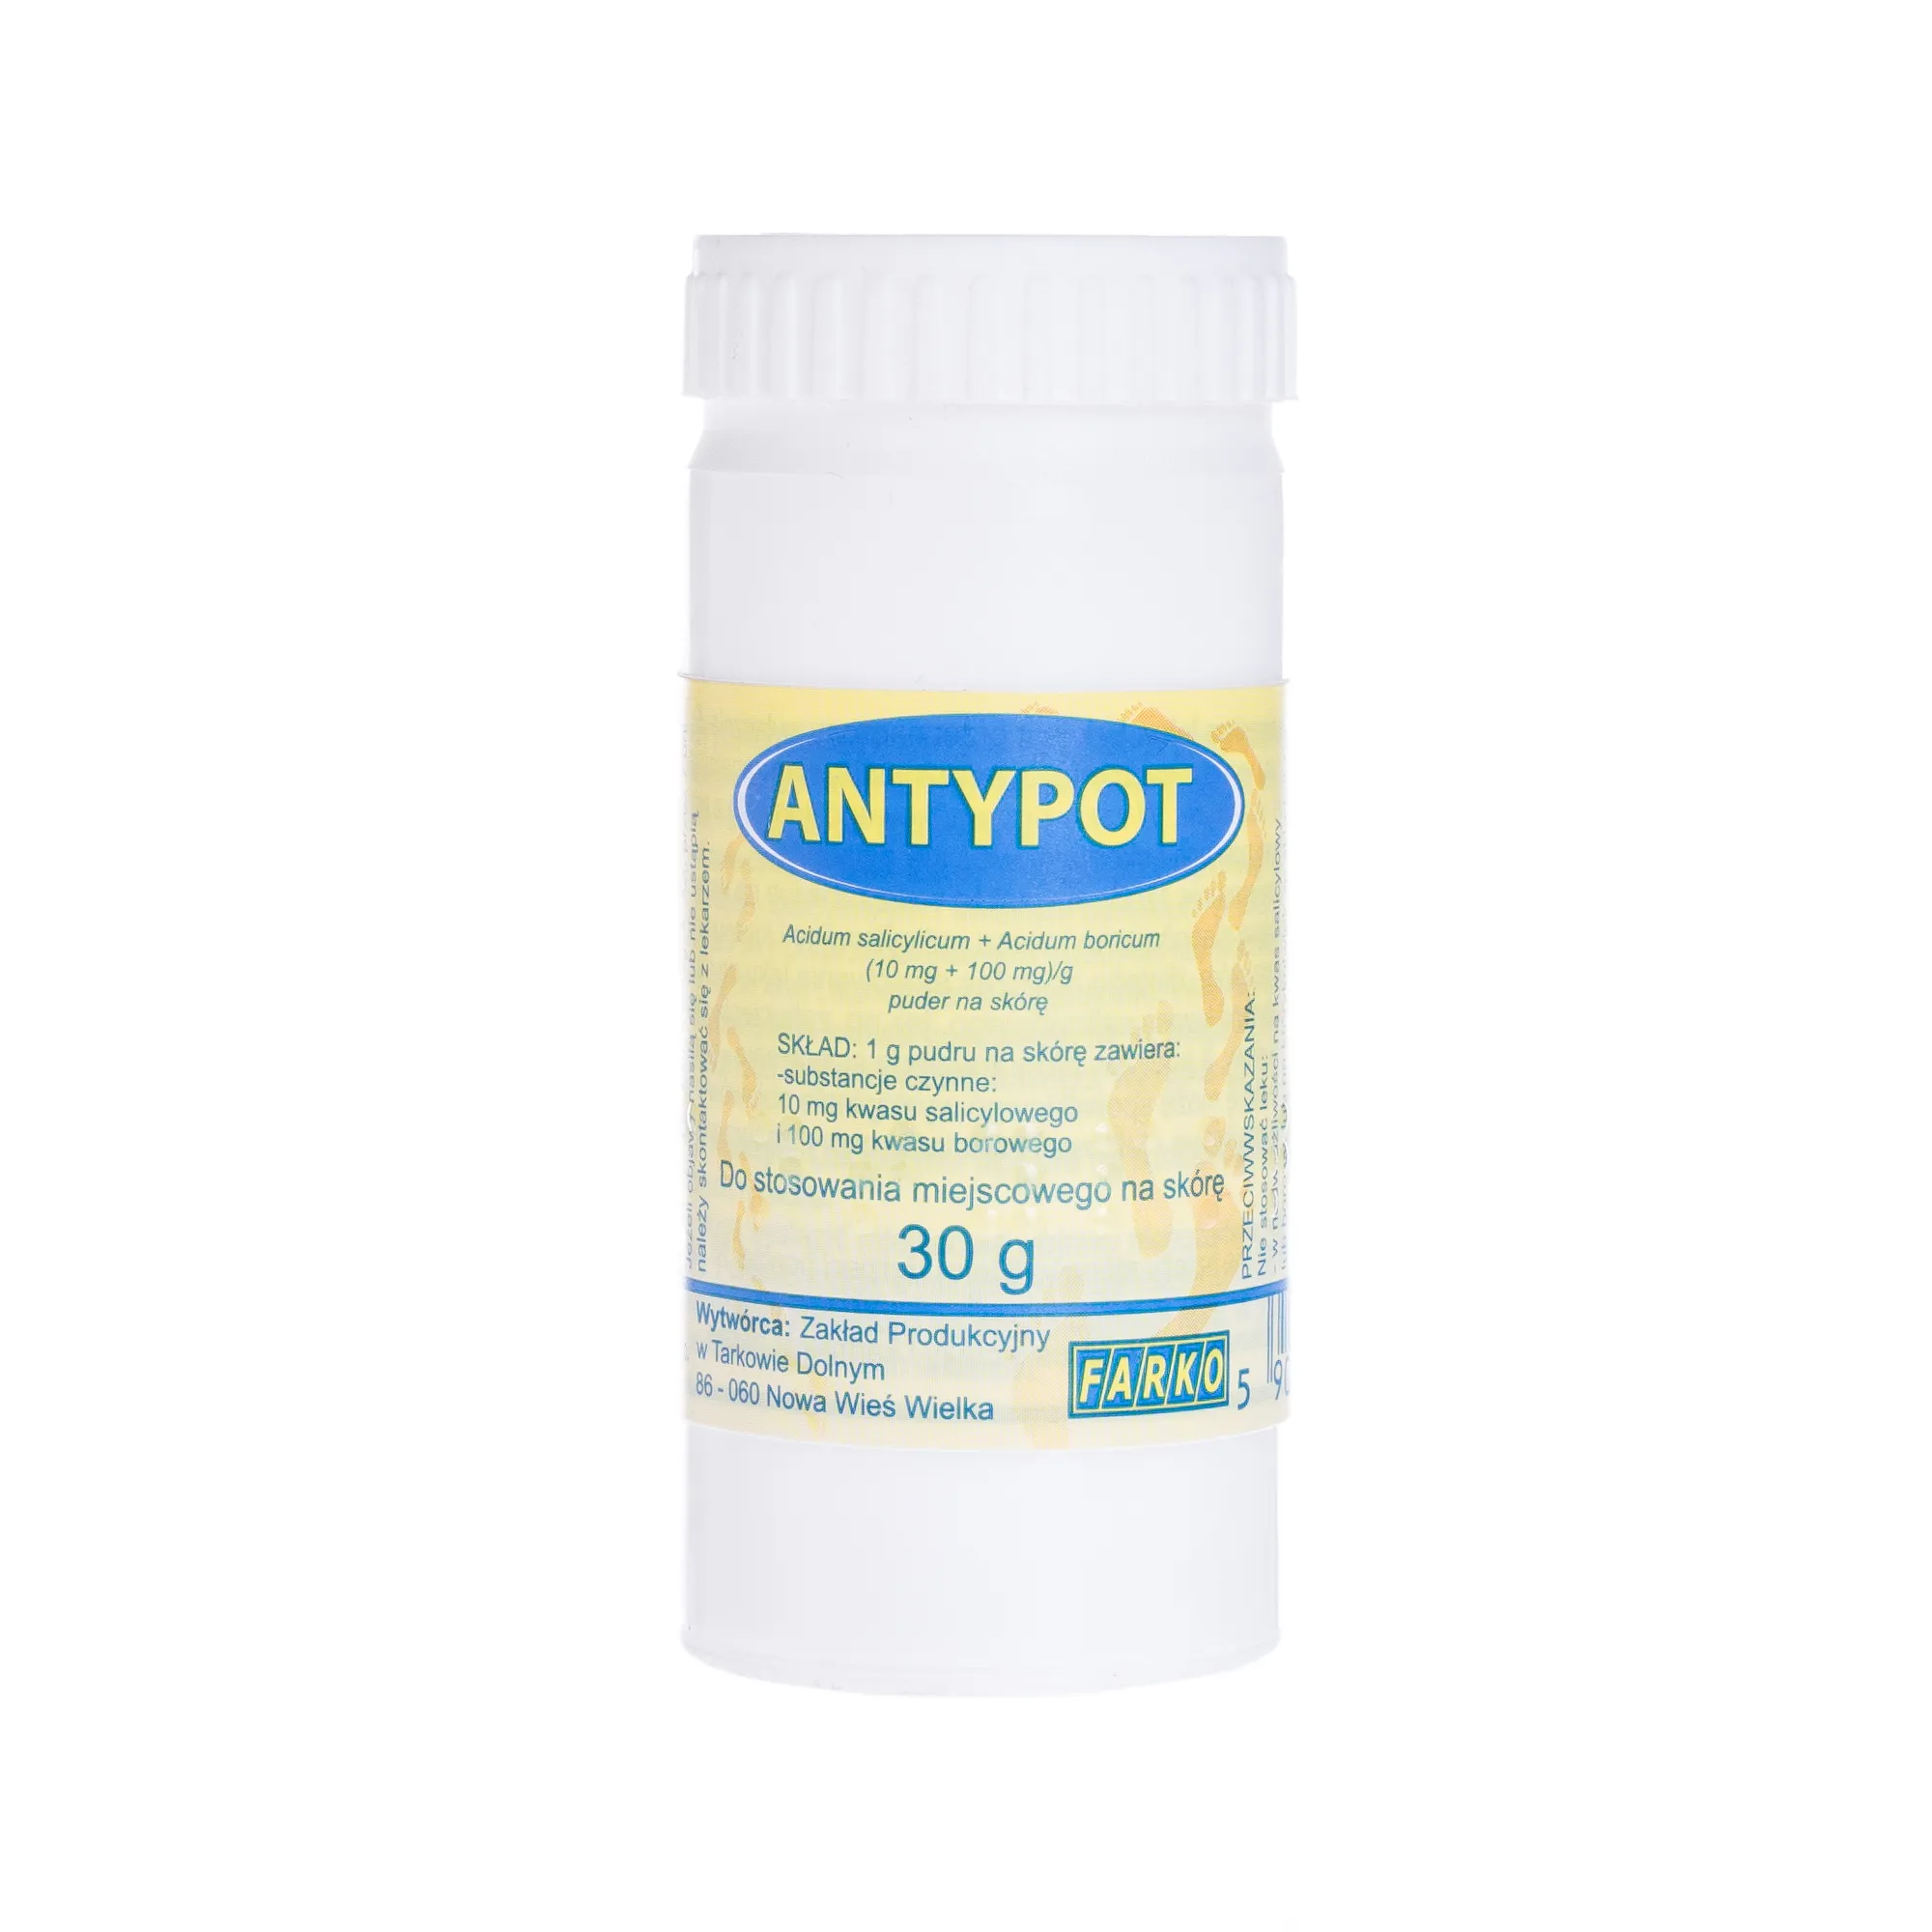 Antypot, (10 mg + 100 mg)/g, puder na skórę, 30 g